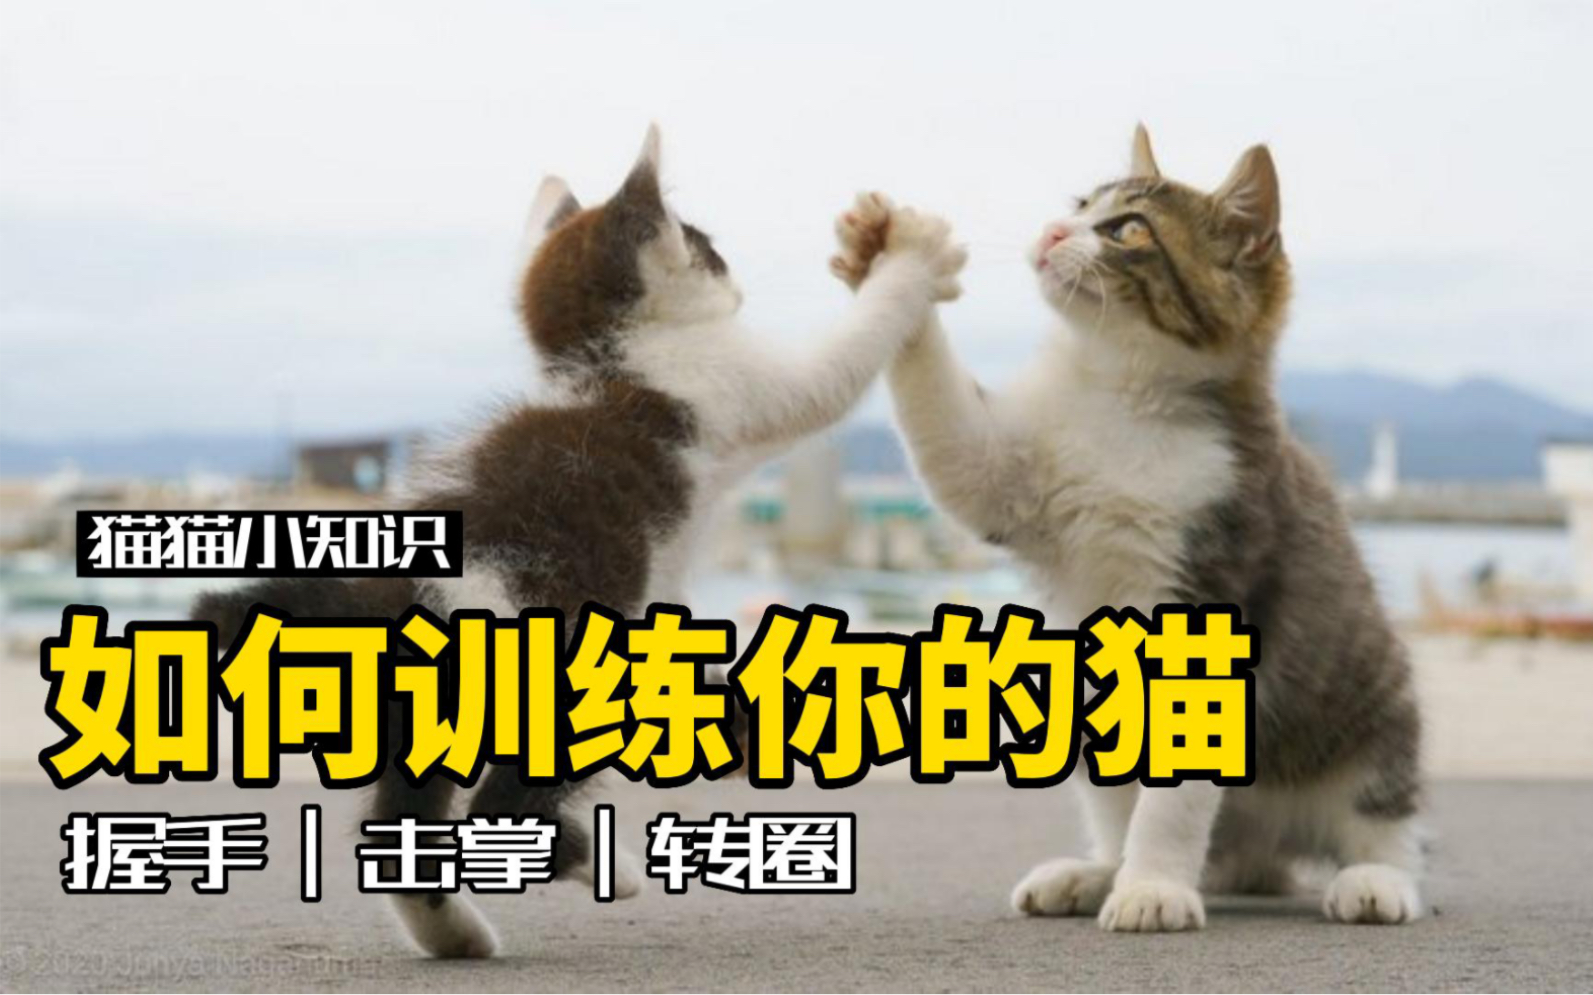 猫咪训练|4步教你轻松打造会握手的猫咪 - 知乎